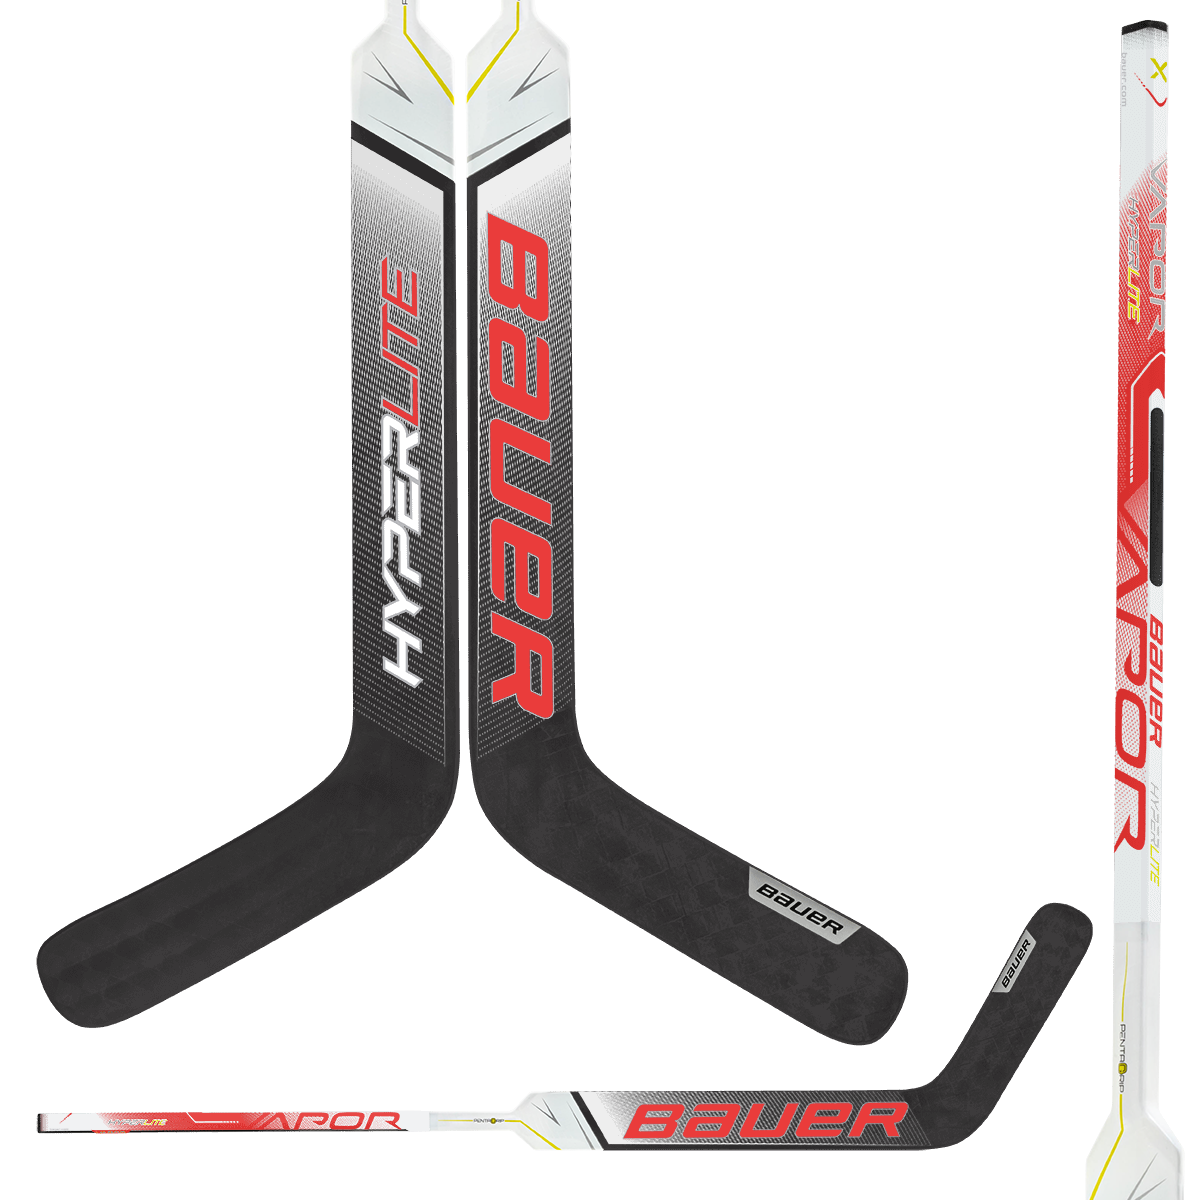 Bauer Vapor HyperLite Composite Goalie Stick - Custom Design Chicago Inspiration